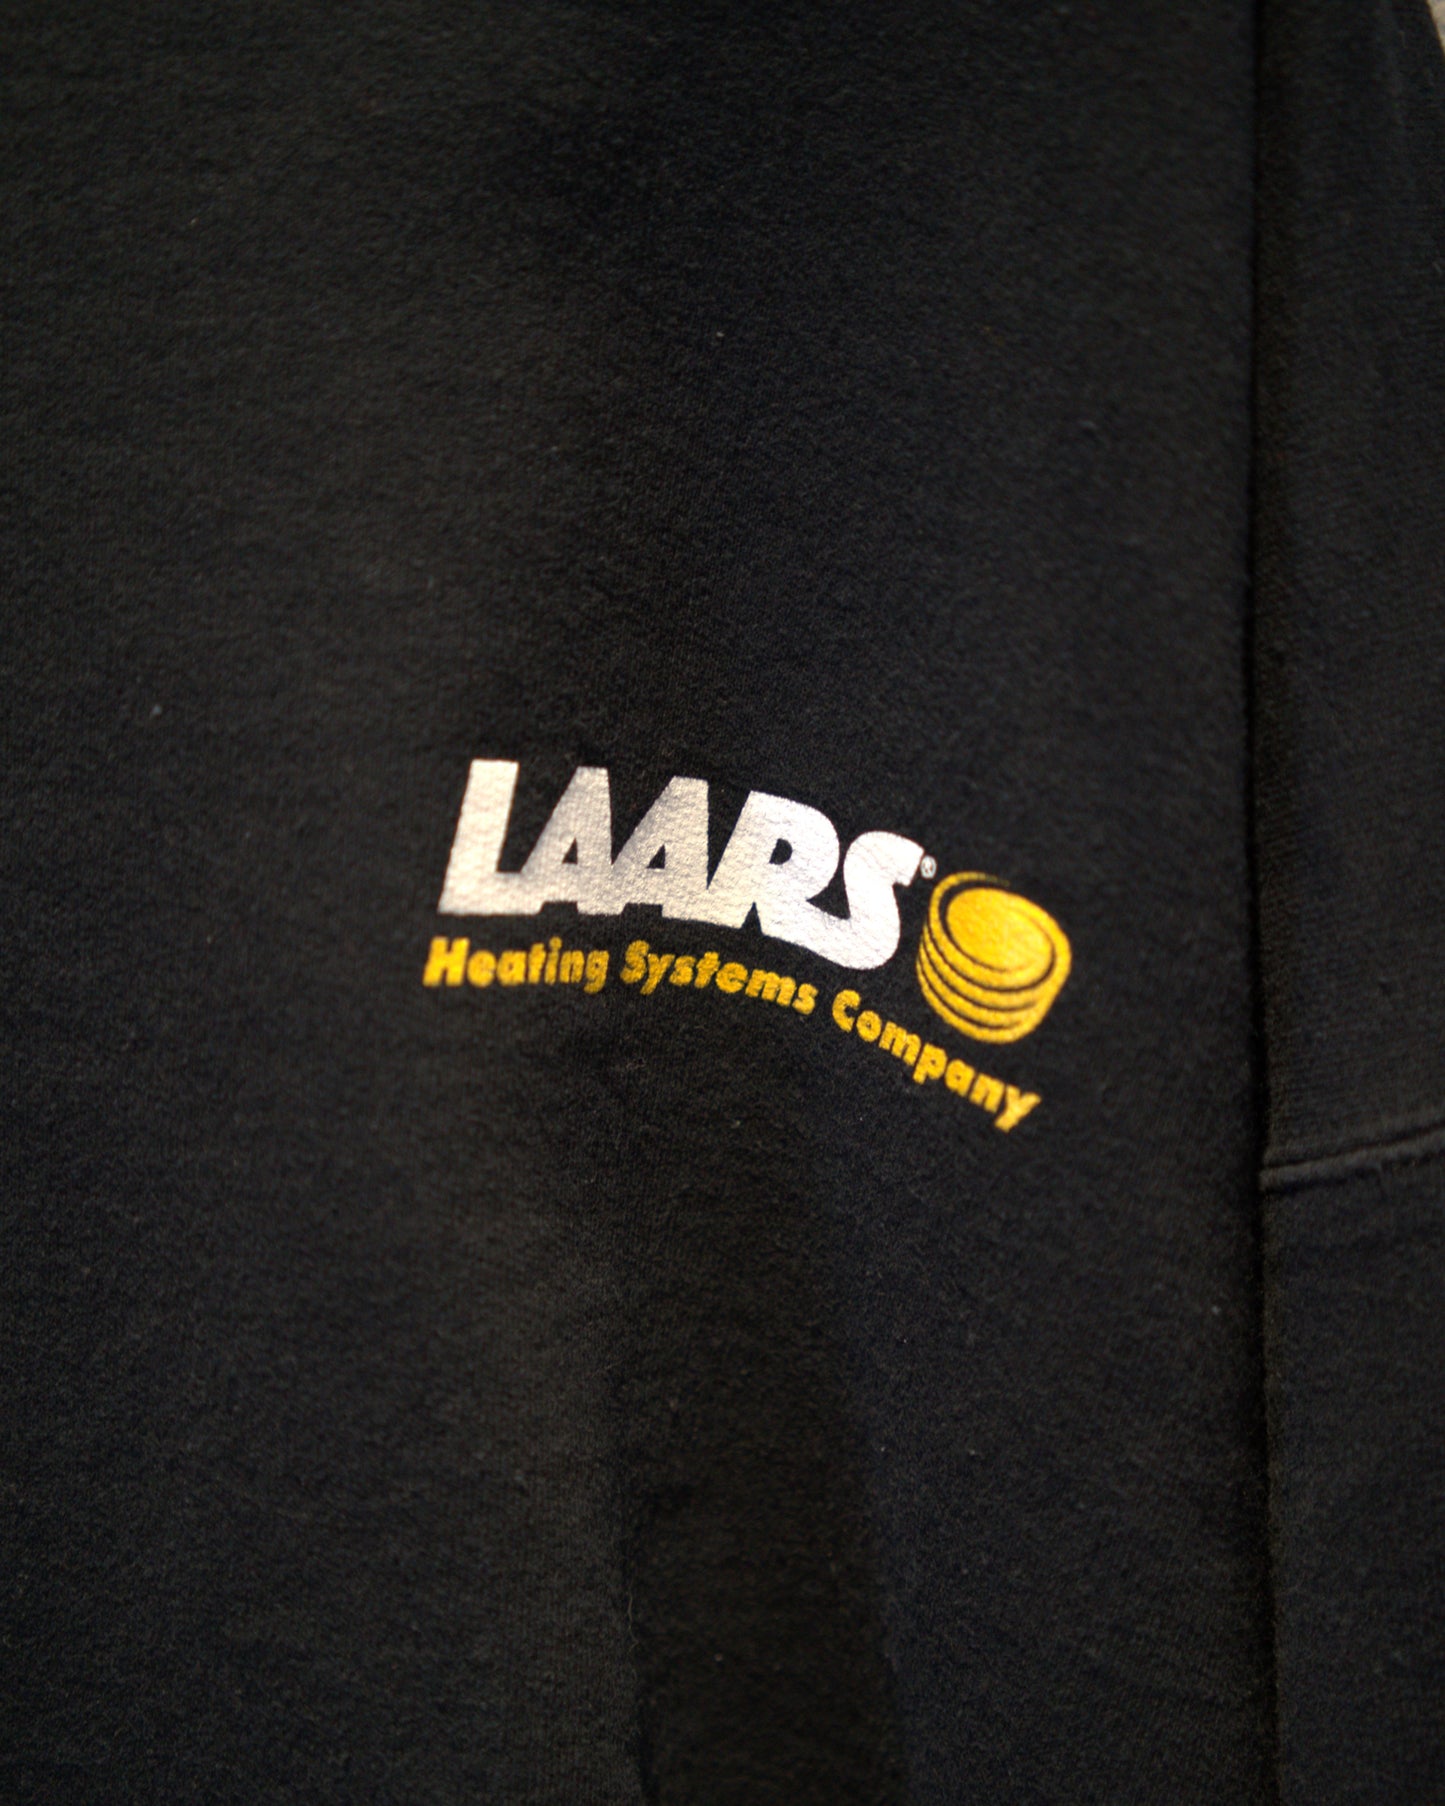 00's LAARS logo sweatshirt